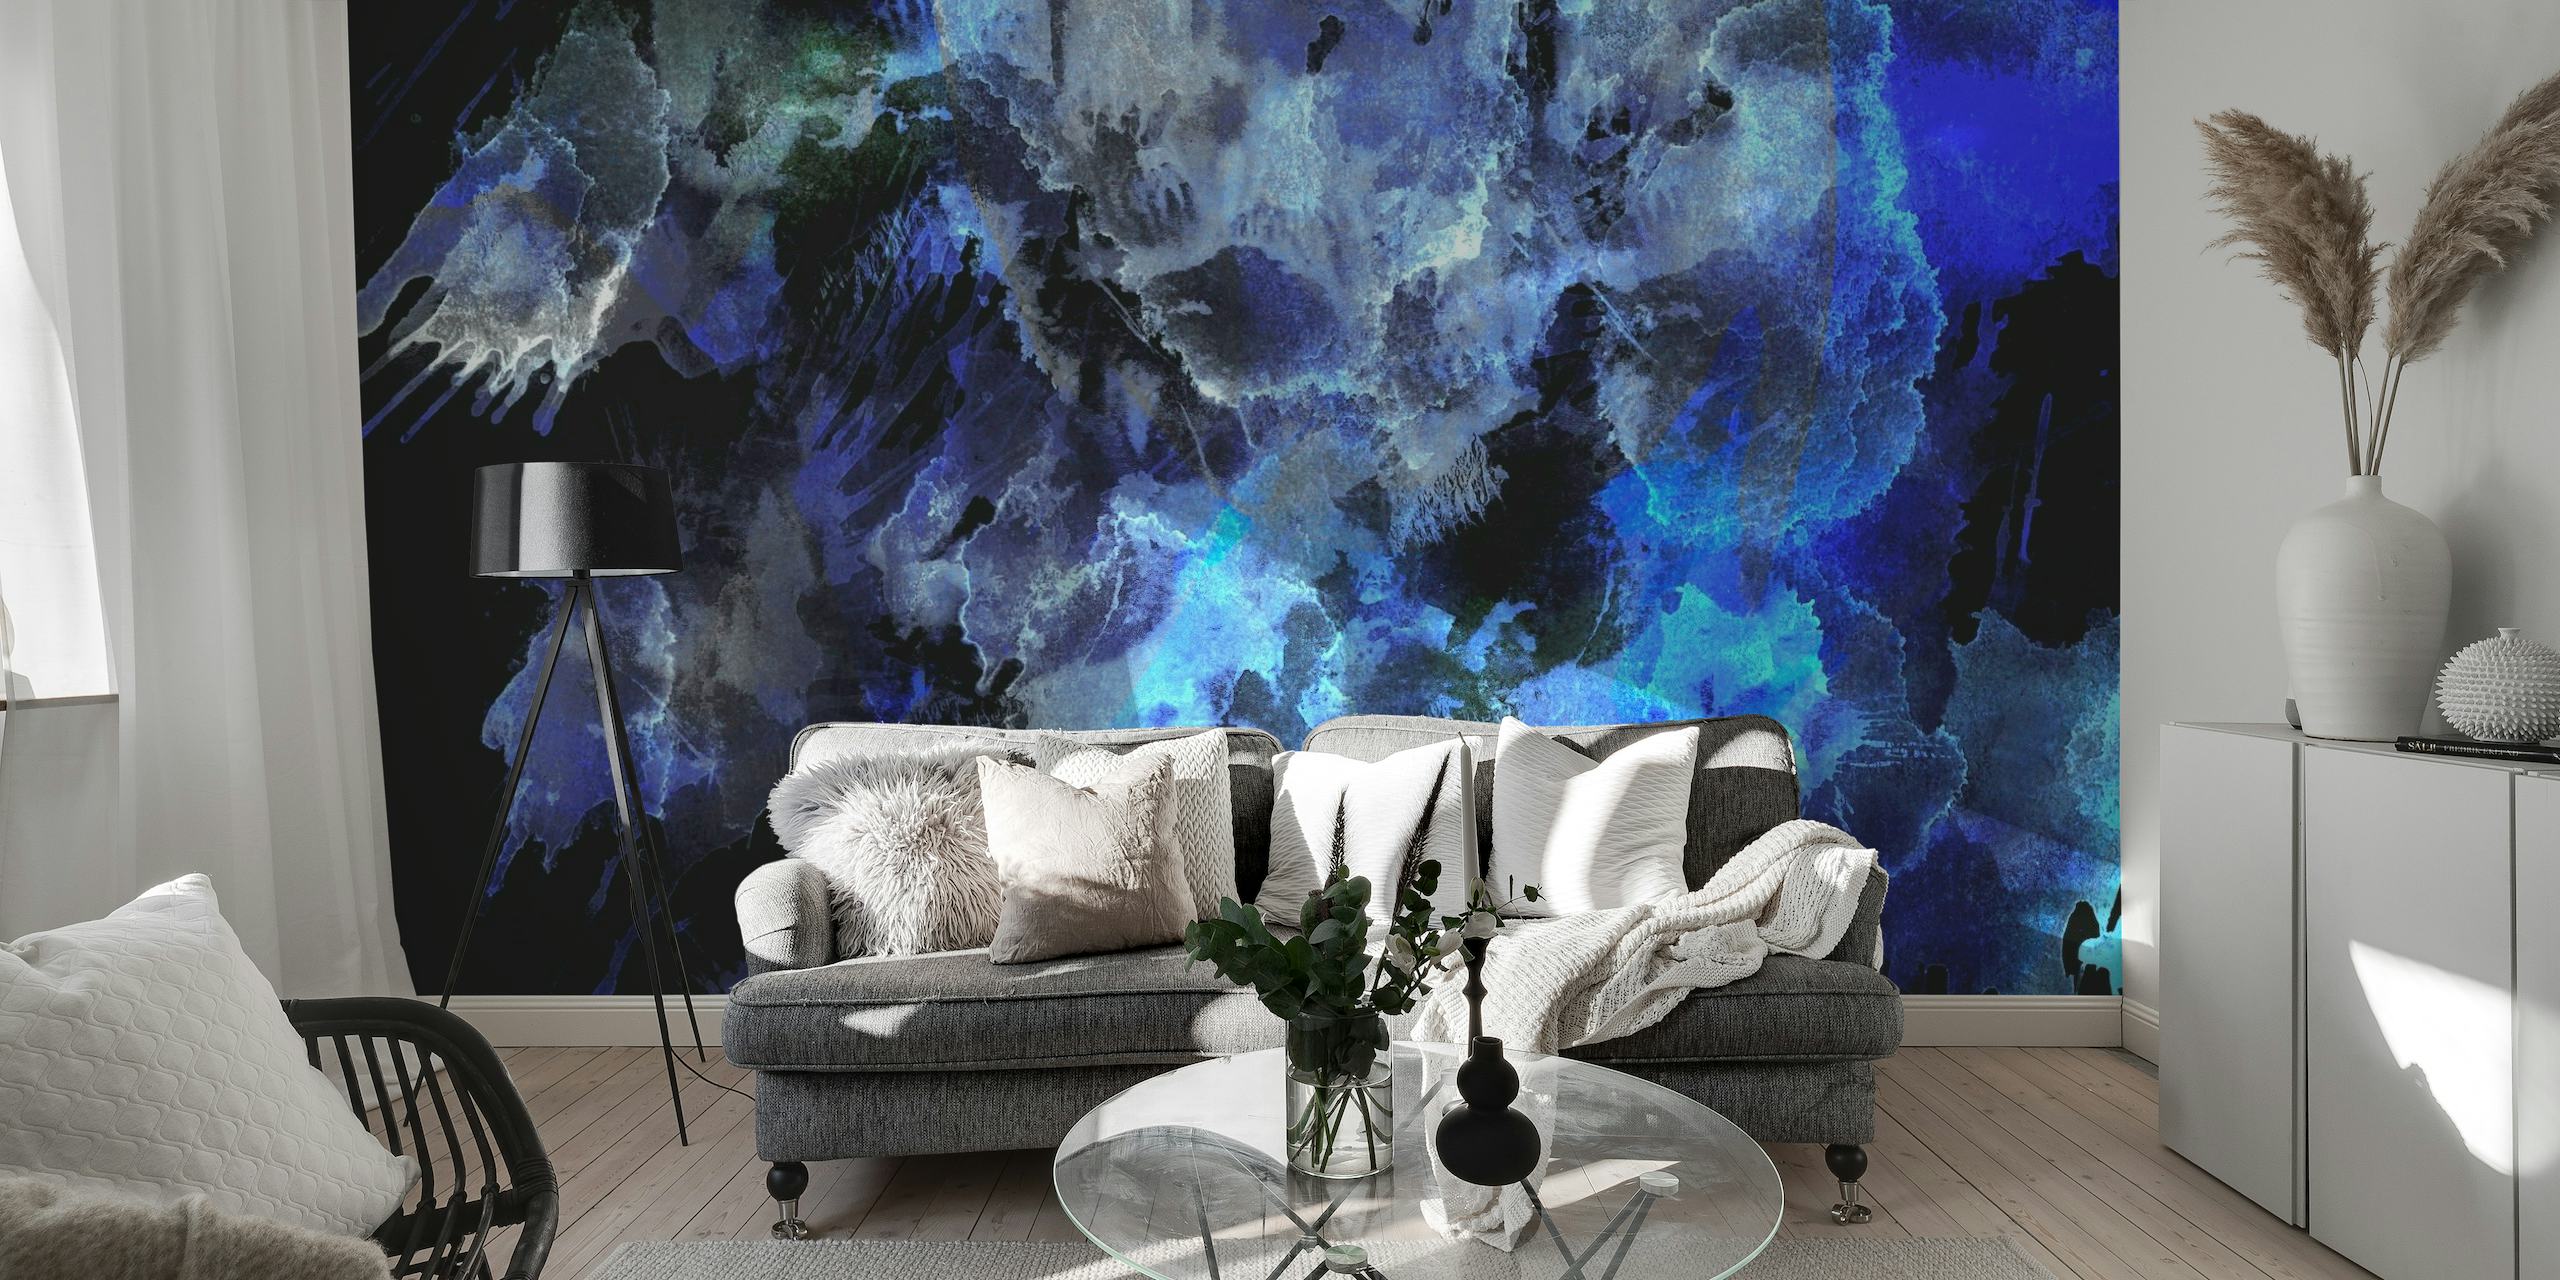 Abstract middernachtblauw en zwart aquarelbehang dat een oceanische sfeer creëert